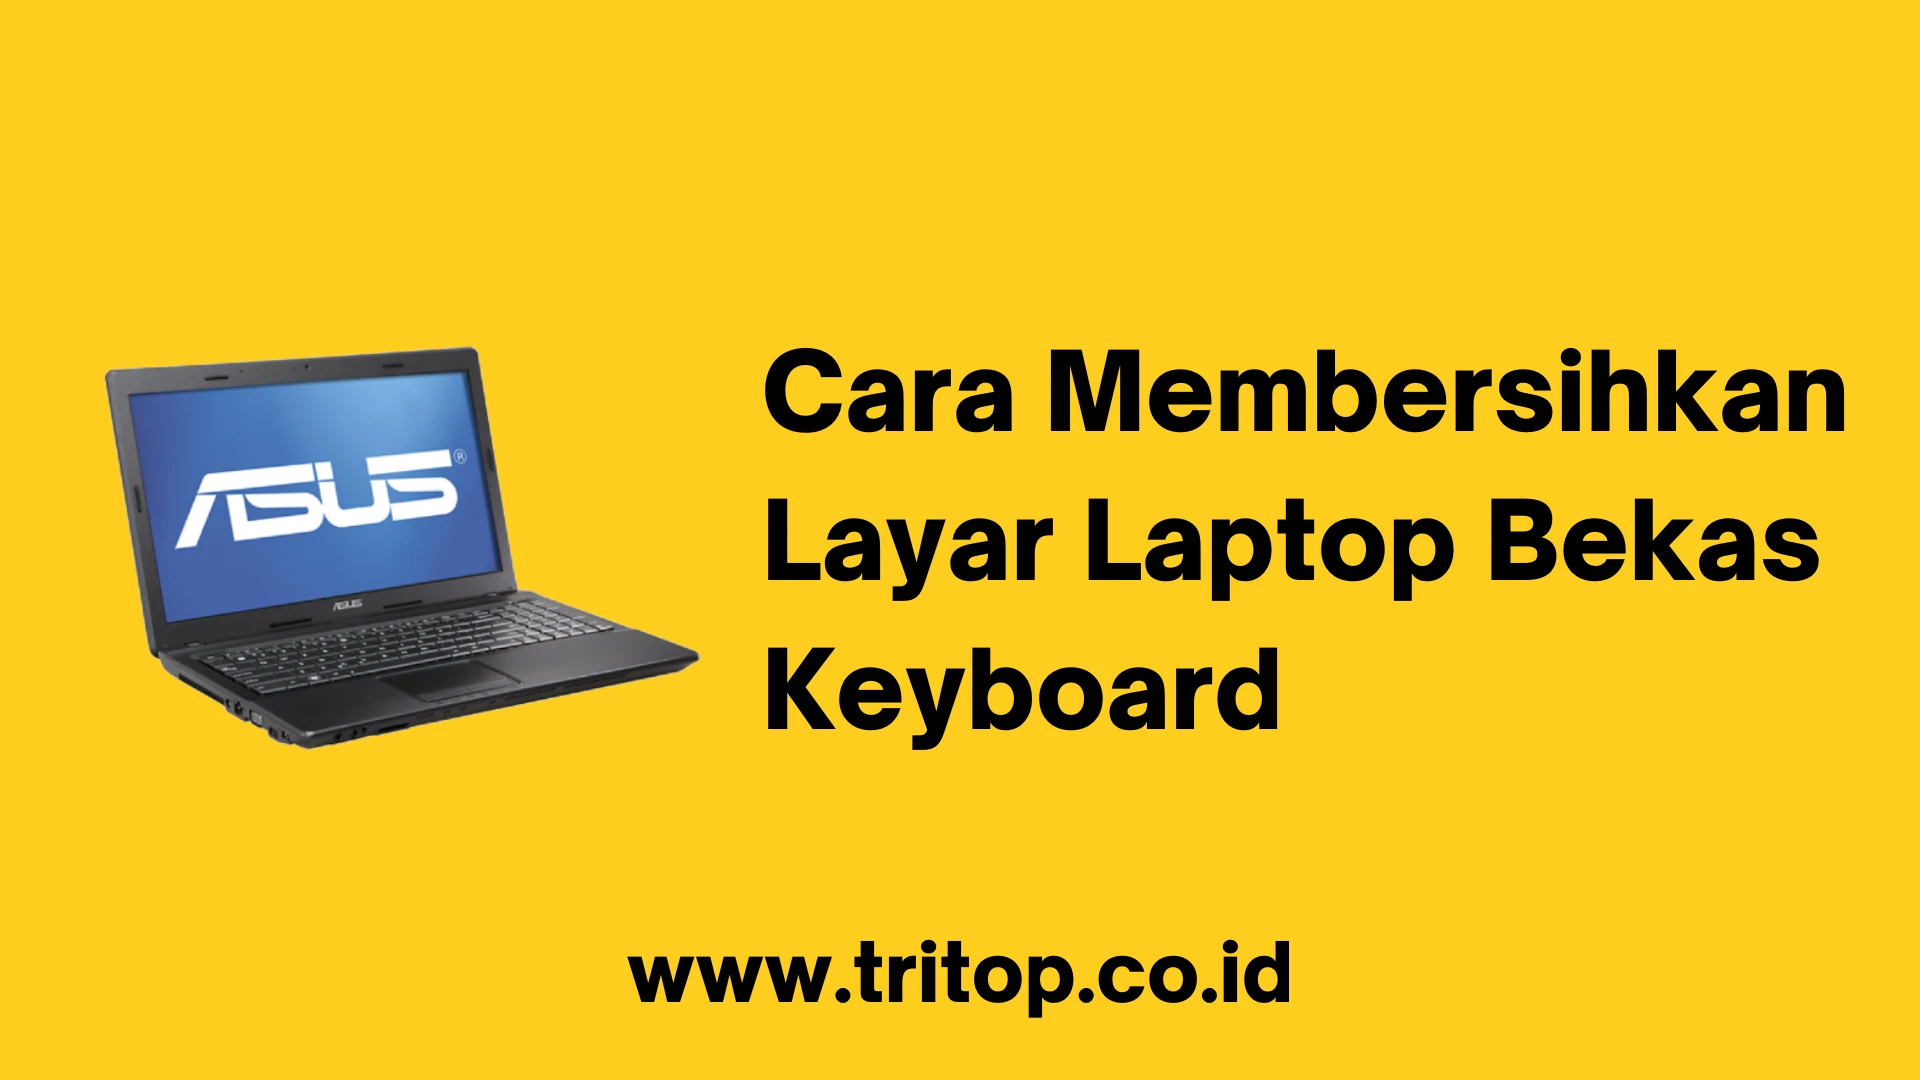 Cara Membersihkan Layar Laptop Bekas Keyboard